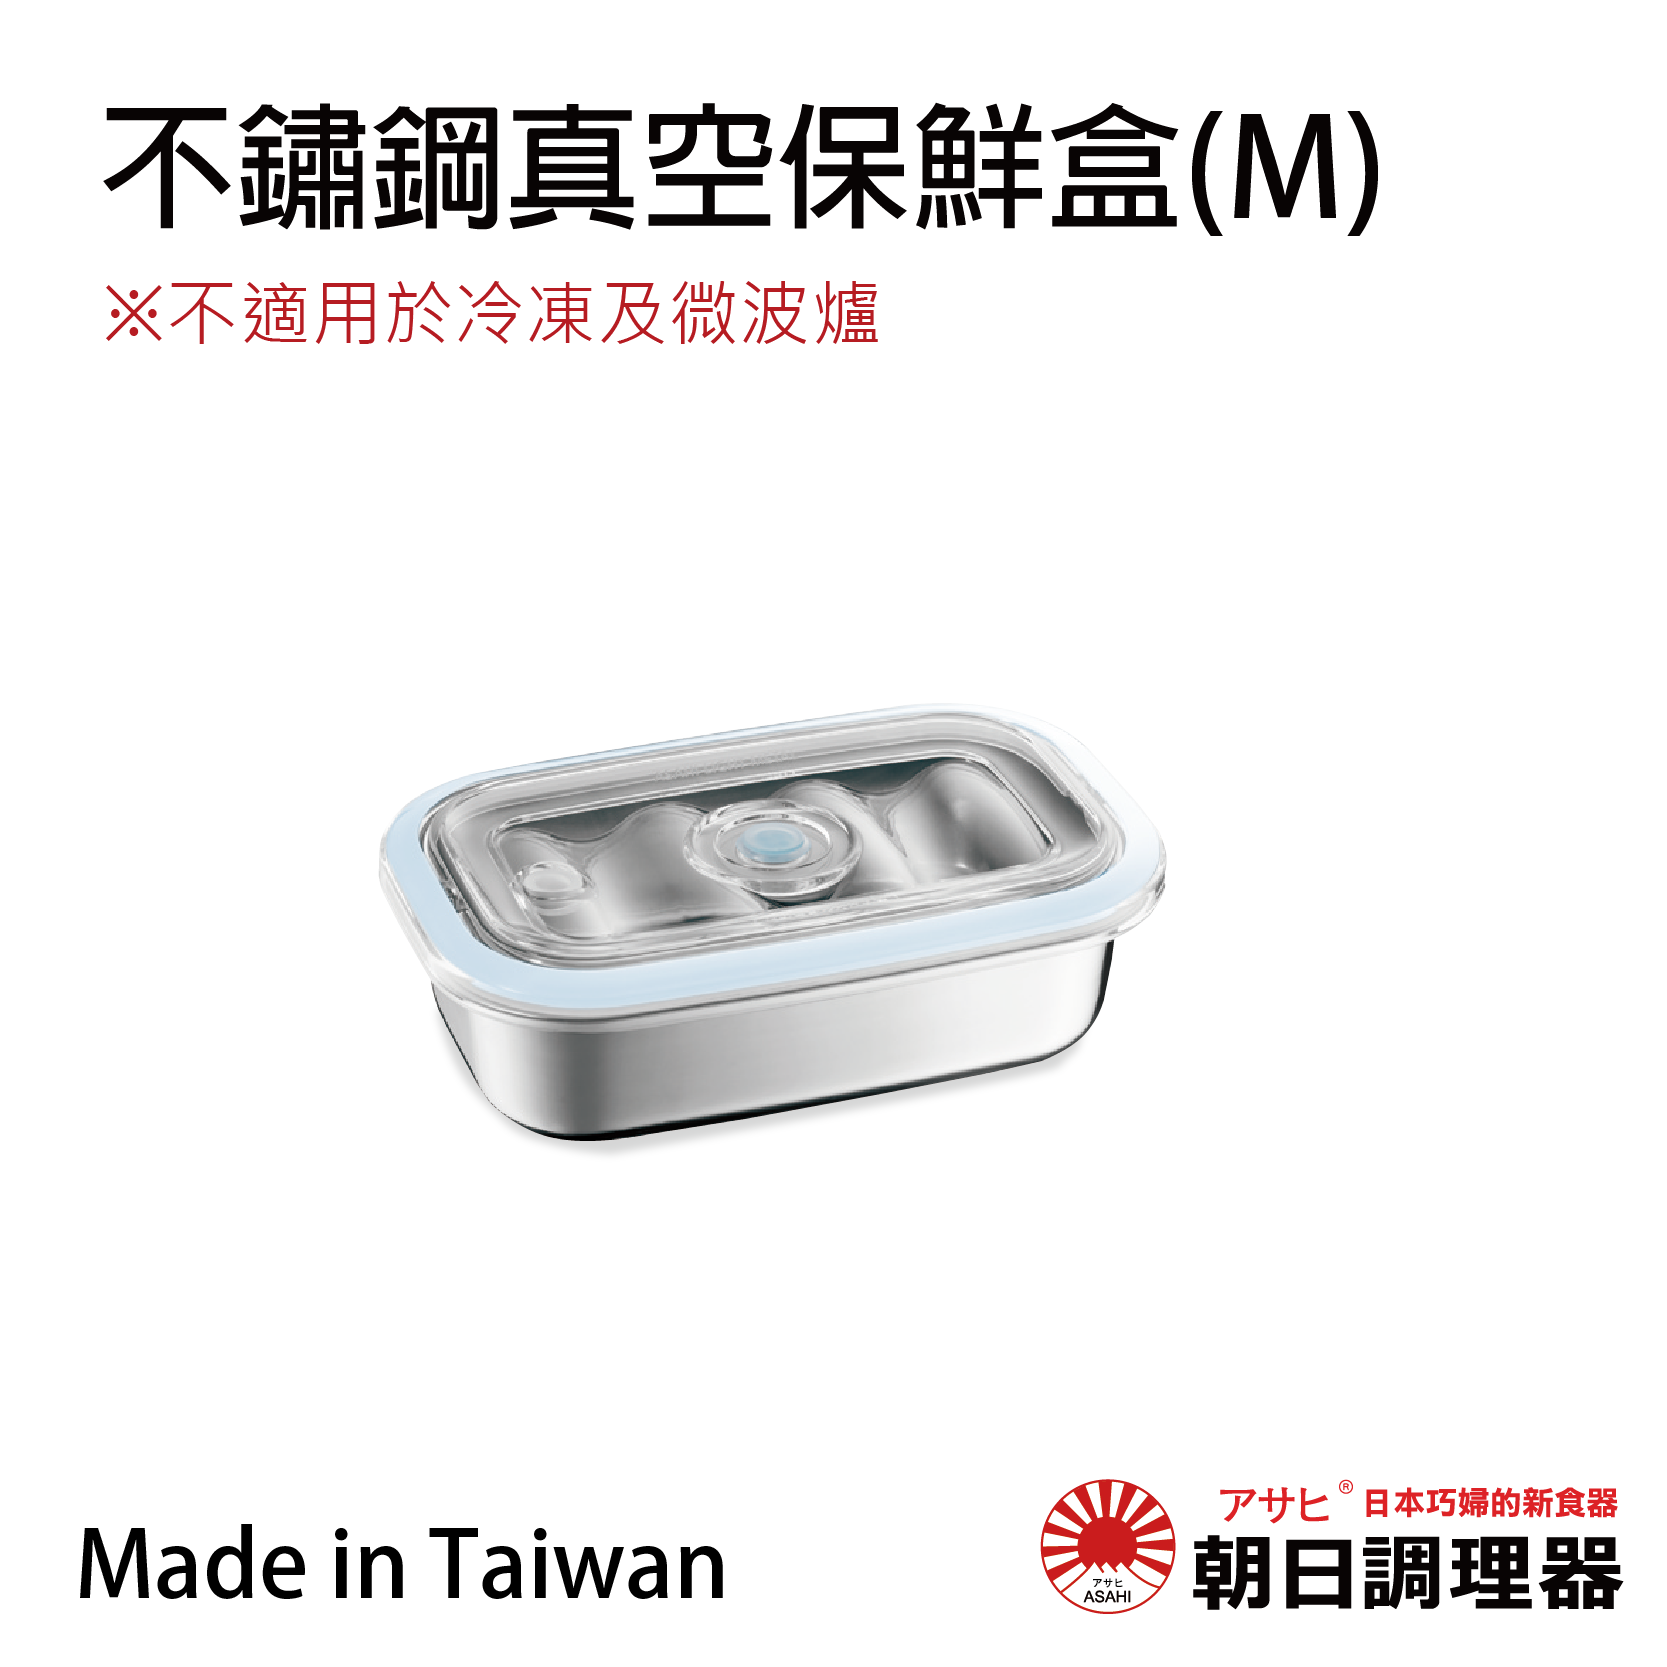 【朝日調理器】不鏽鋼真空保鮮盒(M) 無真空,真空密封容器 可堆疊保鮮盒